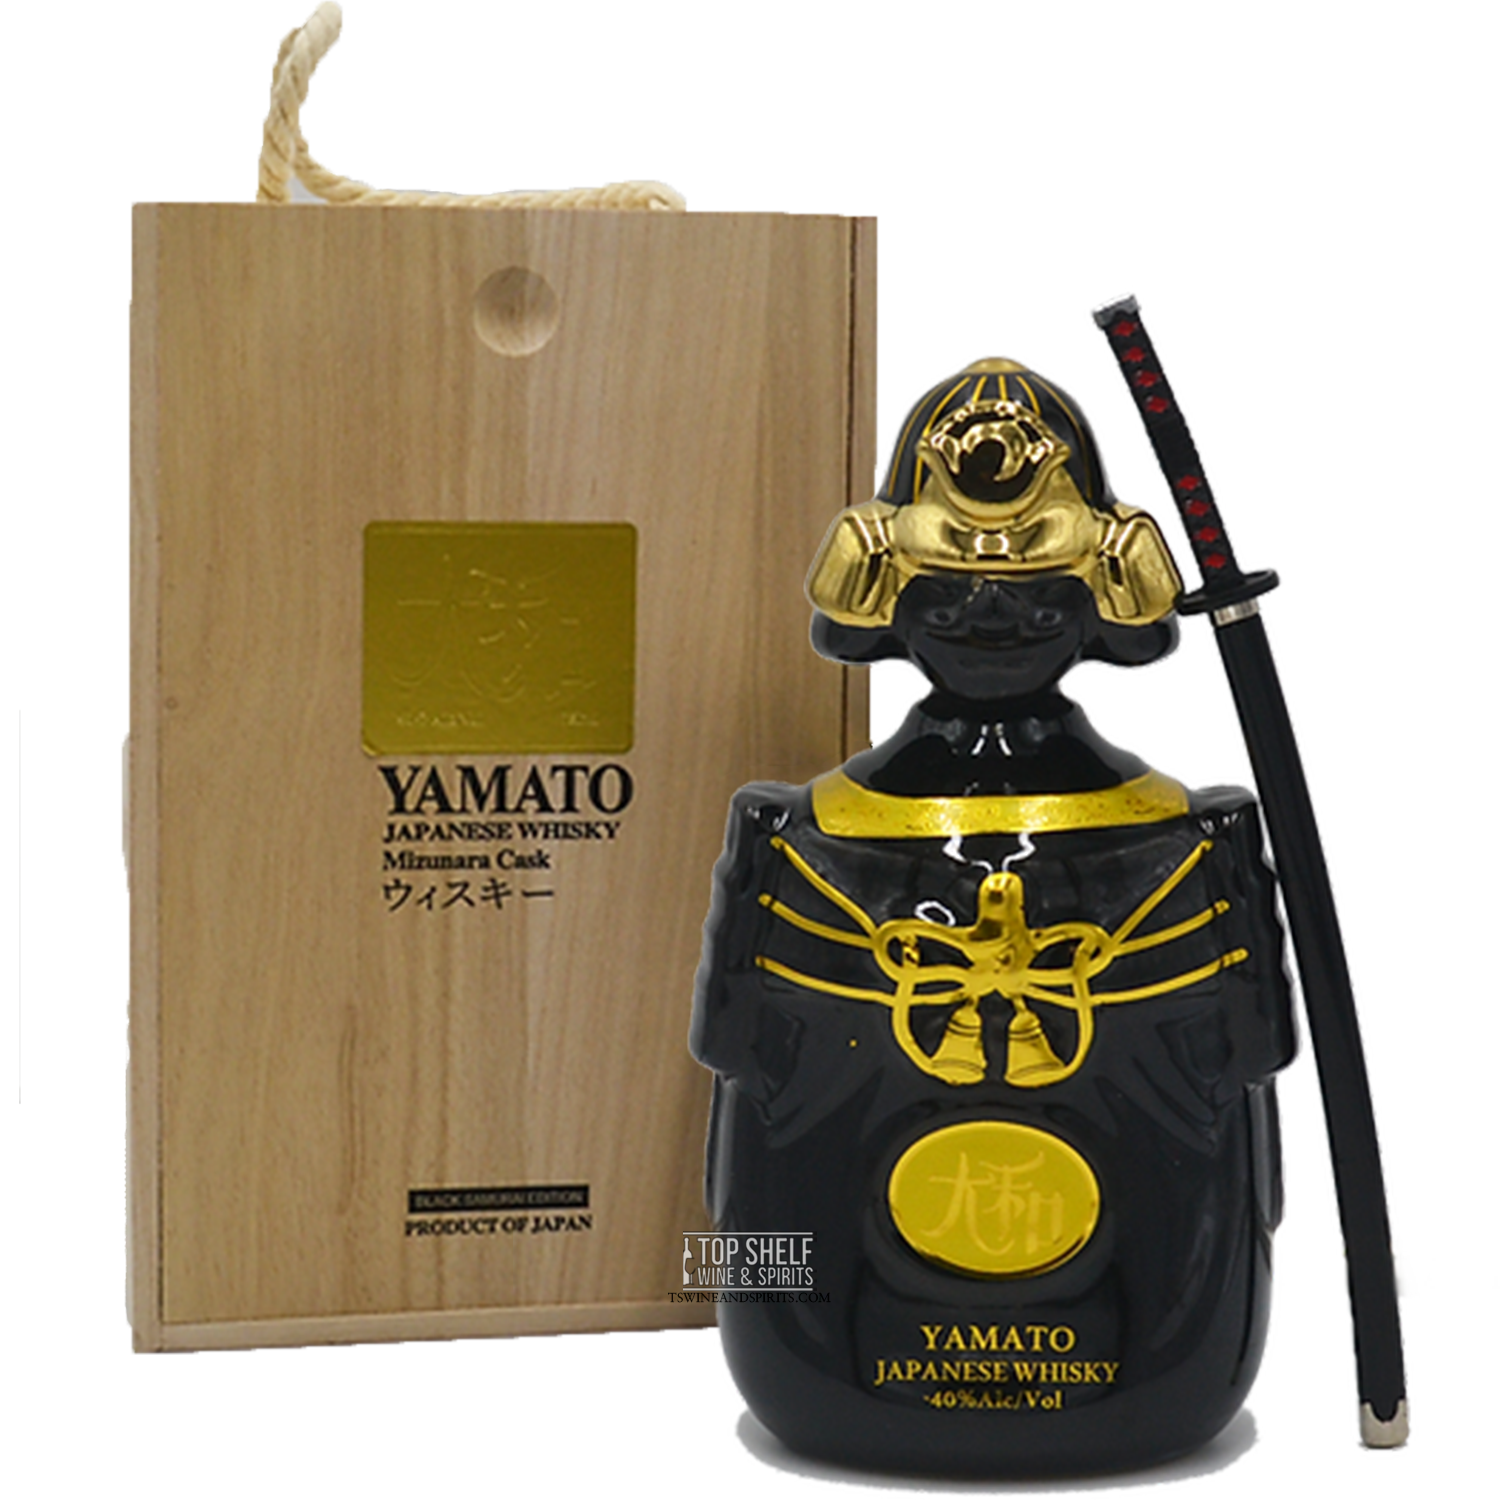 Yamato Mizunara Cask Japanese Whisky (Black Samurai Edition)